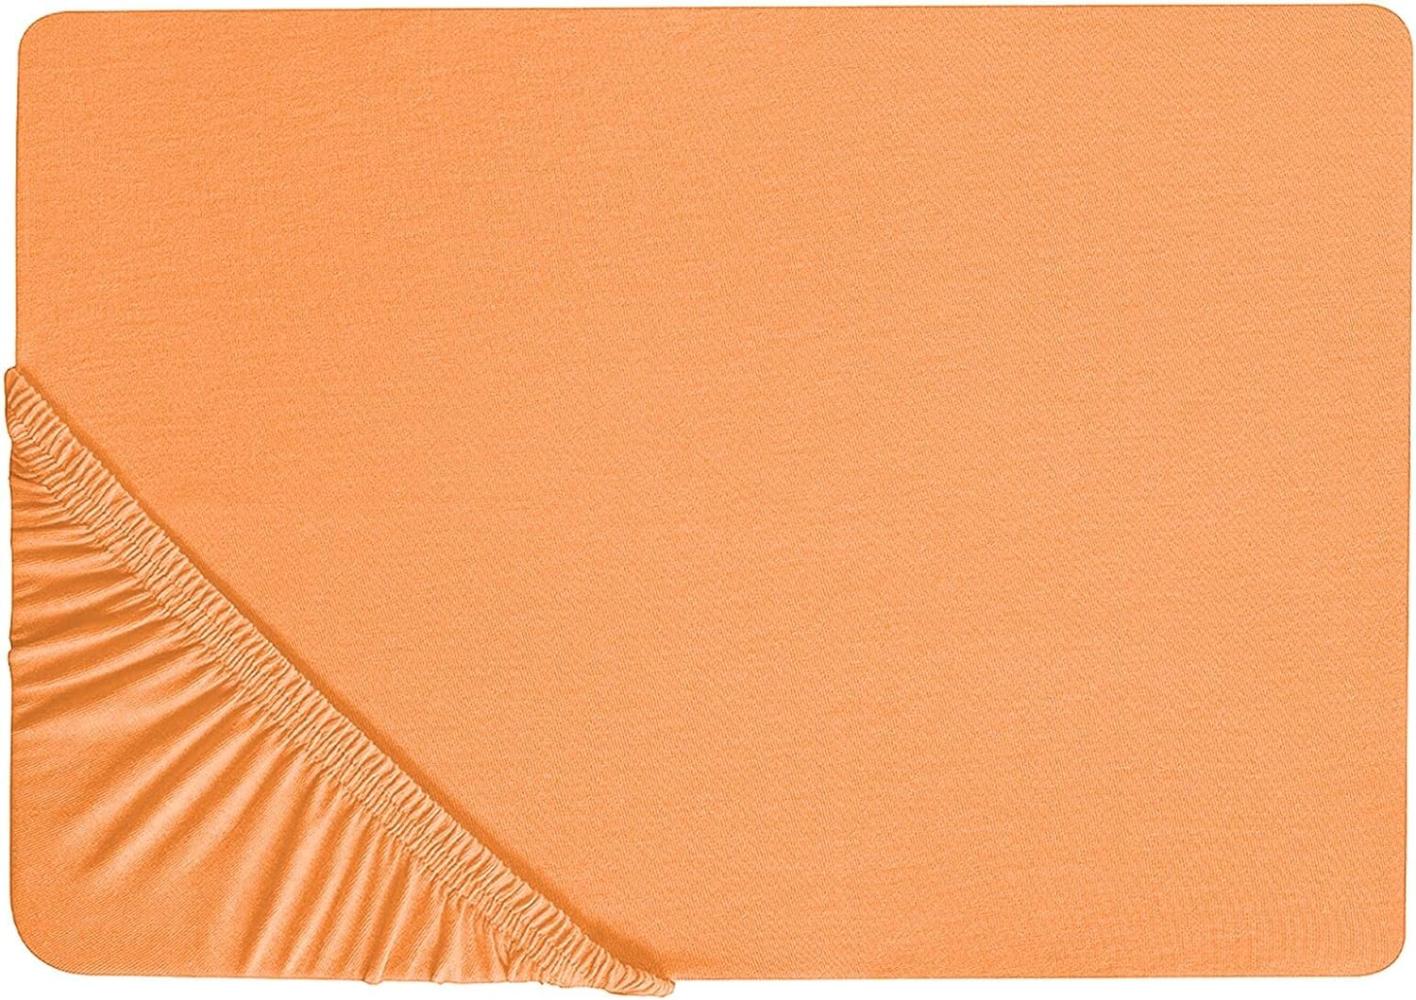 Spannbettlaken Baumwolle orange 90 x 200 cm JANBU Bild 1